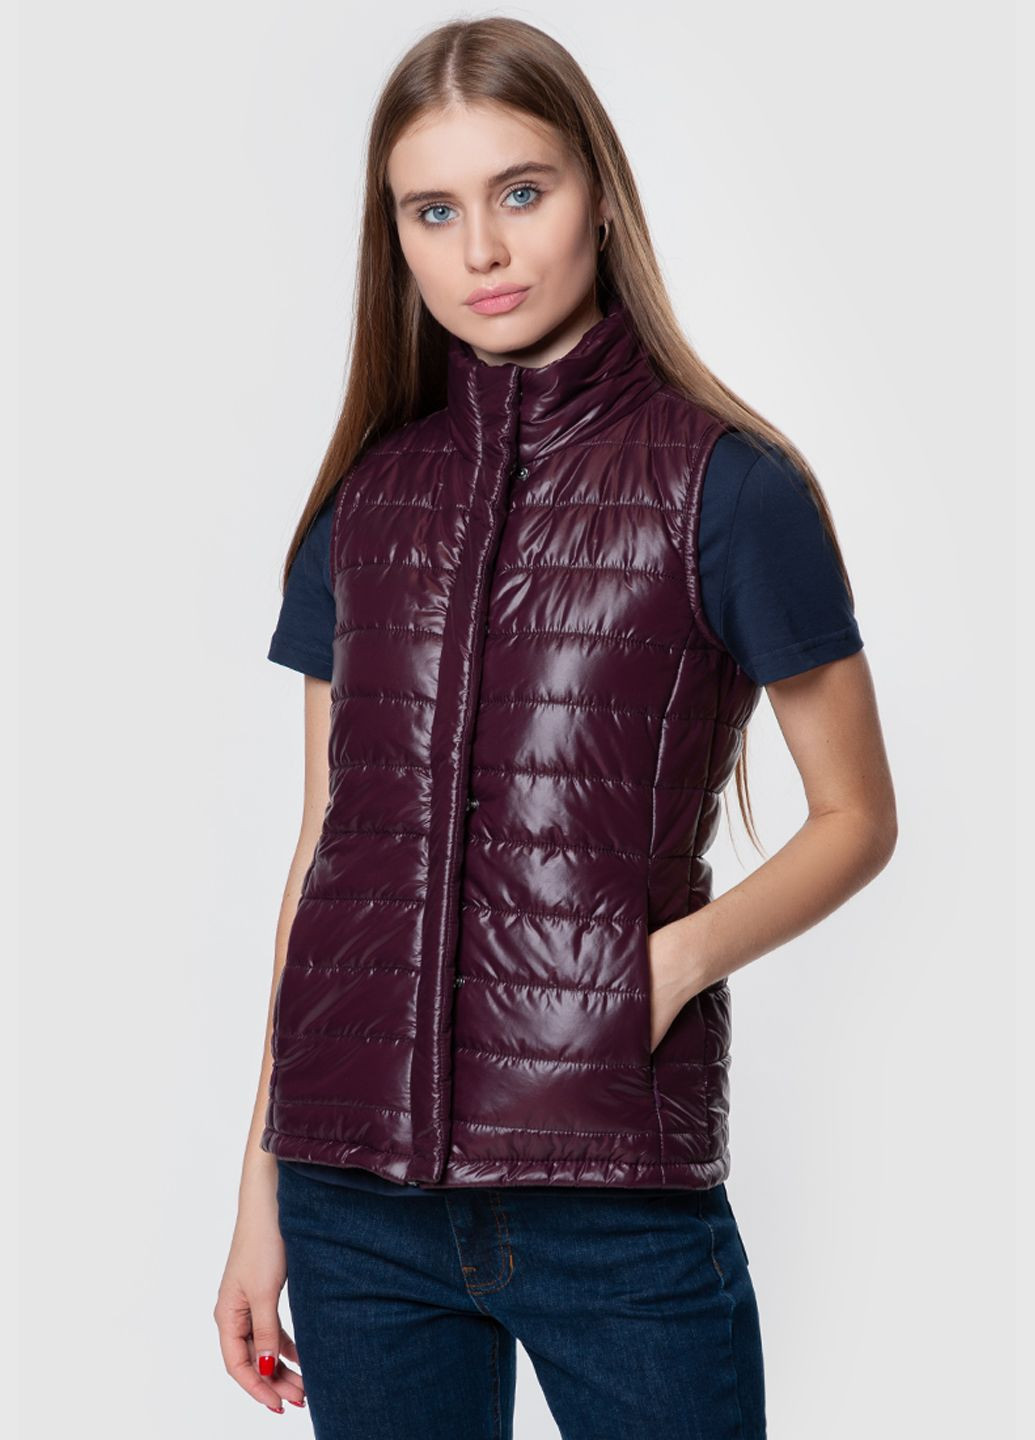 Куртка-жилет женская Arber бордовая Arber Woman vest demi w (282844146)